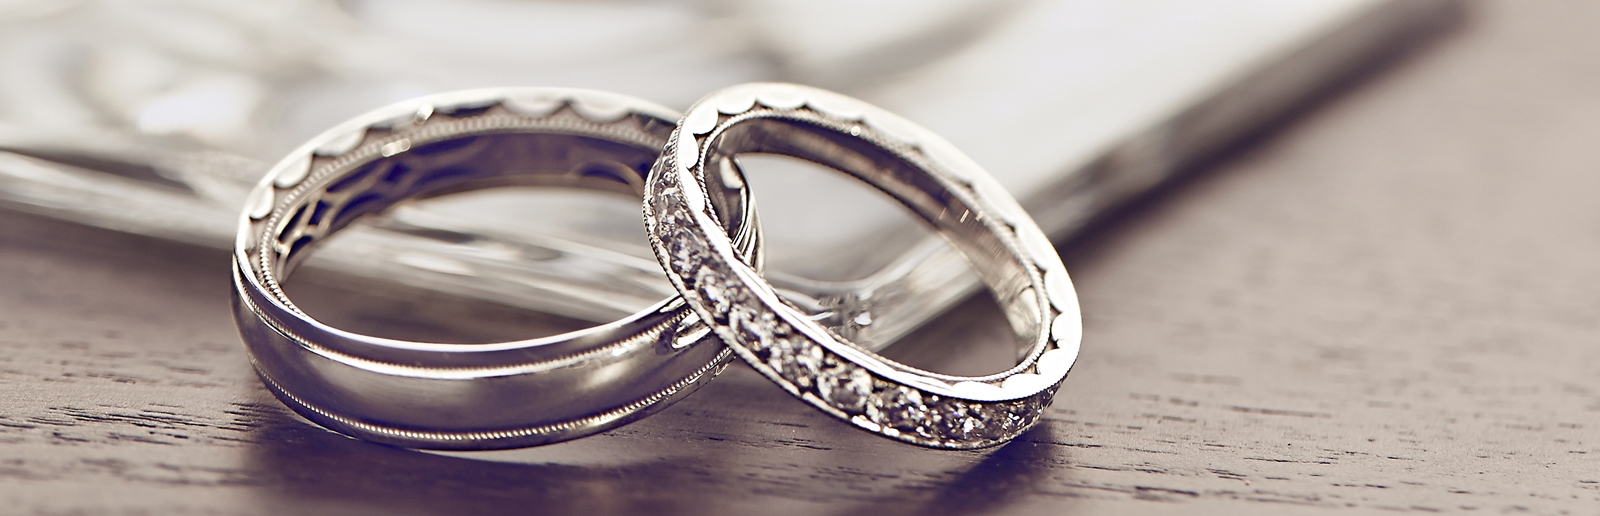 Nhẫn cưới là biểu tượng thiêng liêng của mối quan hệ vợ chồng.